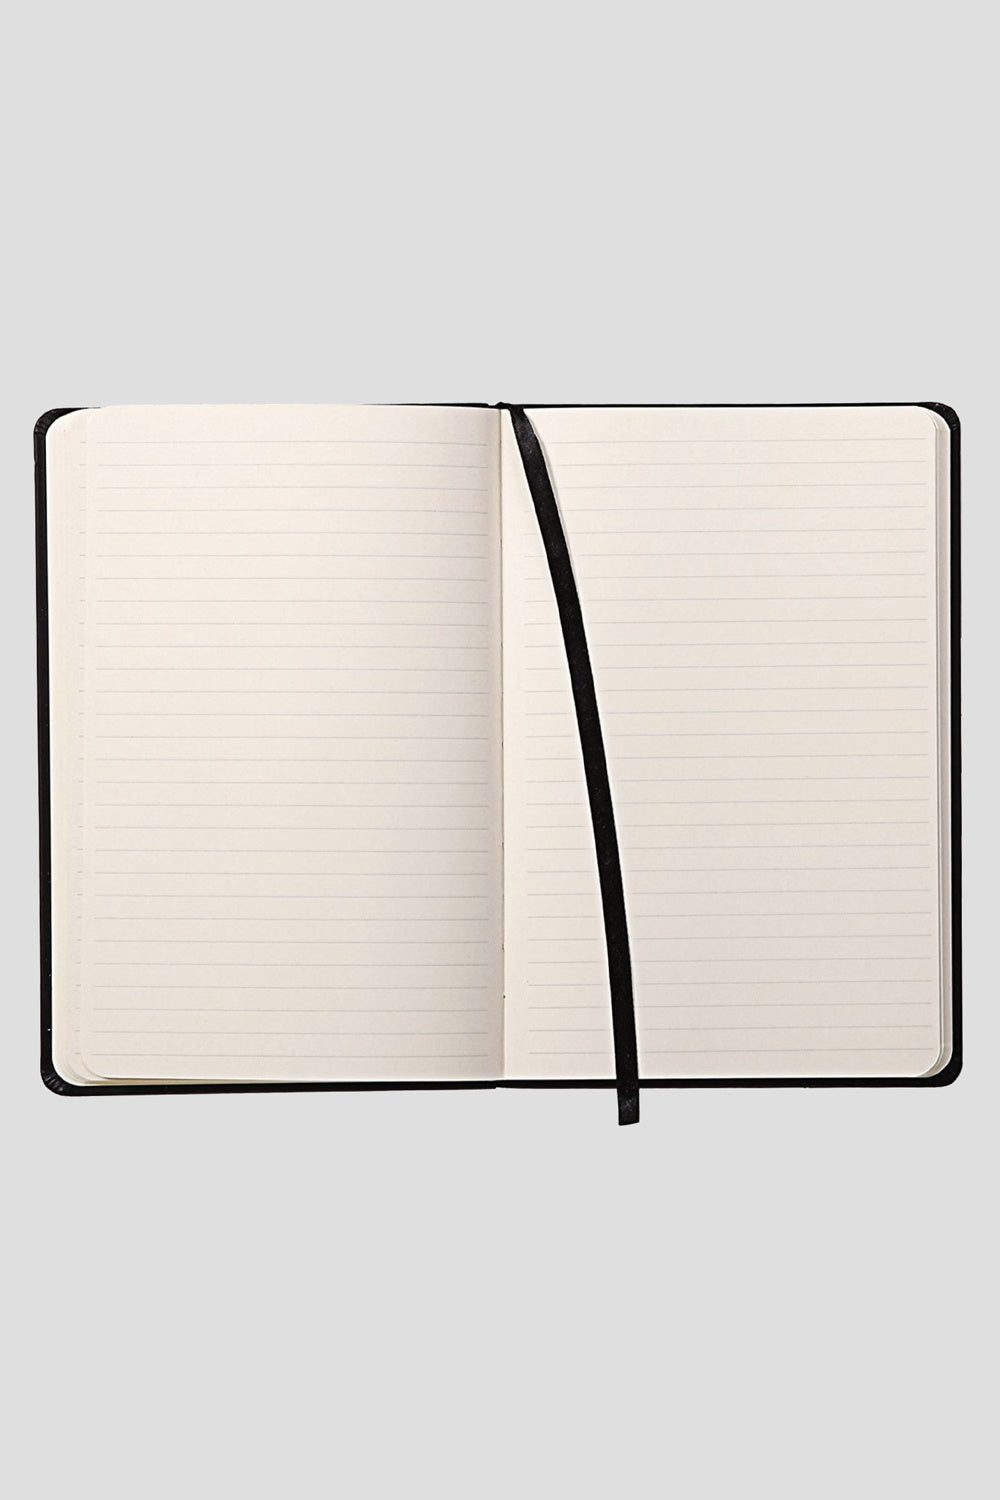 Bound Notebook